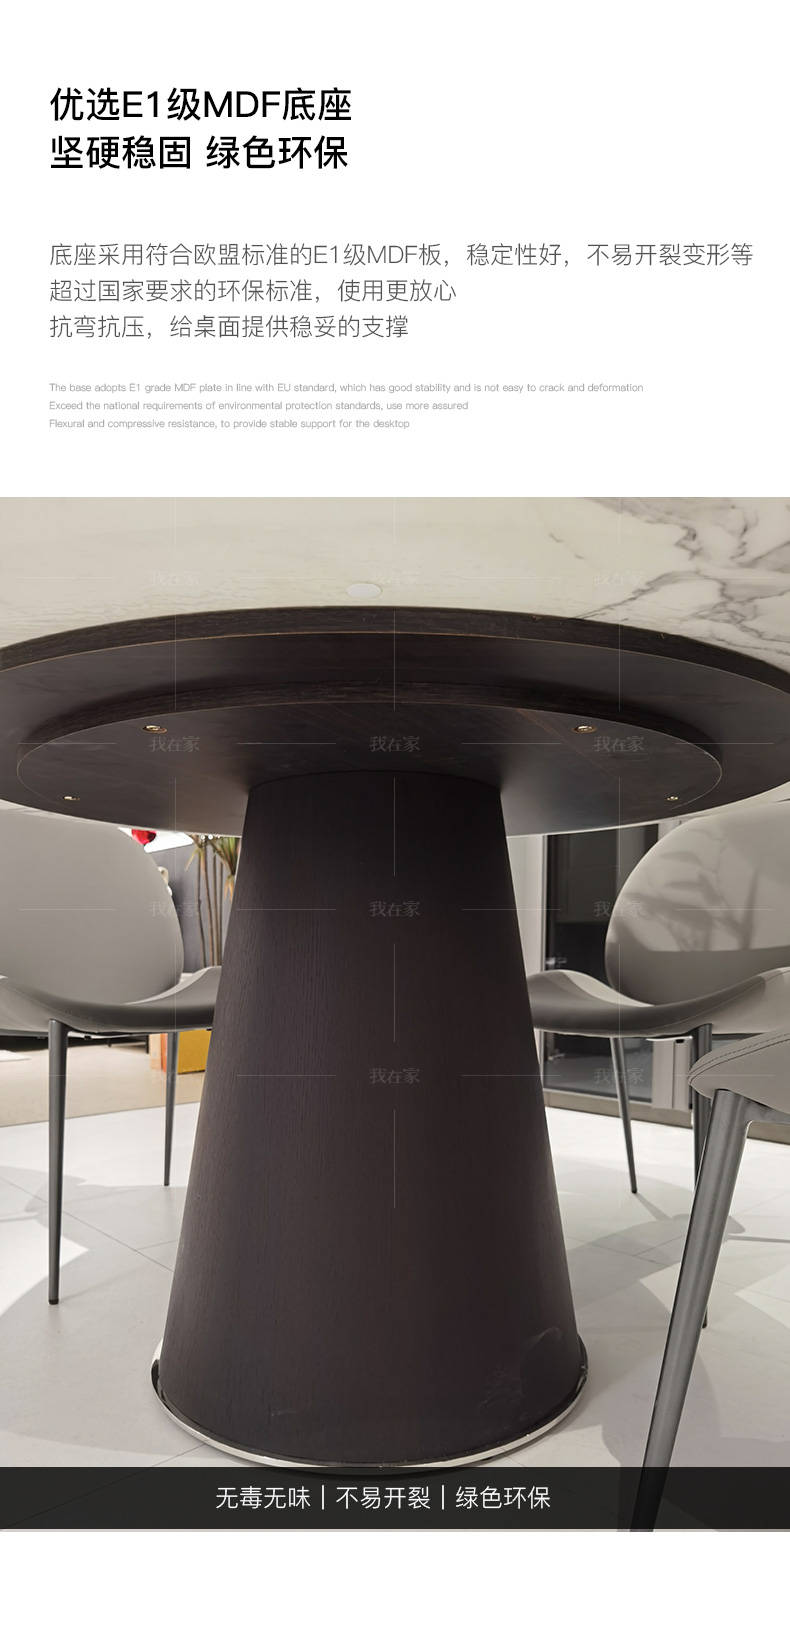 意式极简风格Materic圆餐桌的家具详细介绍